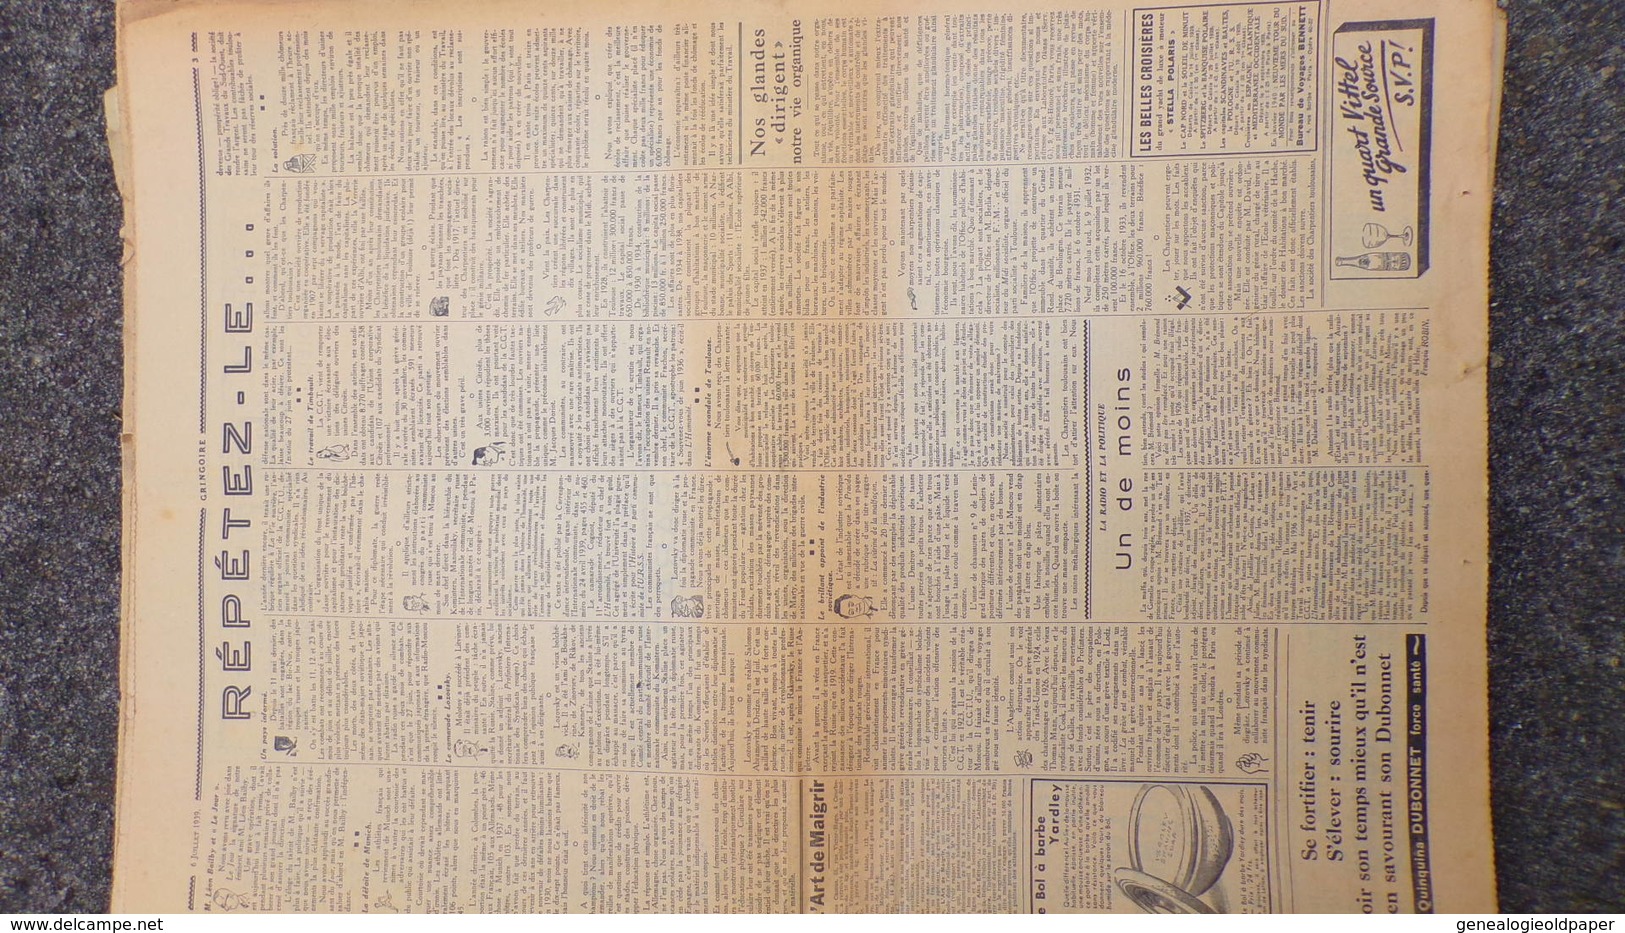 GRINGOIRE -6 JUILLET 1939-N° 556-JOURNAL WW2 PRESSE HEBDO-PARIS-BERAUD-TARDIEU-RECOULY-HITLER-TURQUIE-DANTAZIG-GAMELIN - Frans